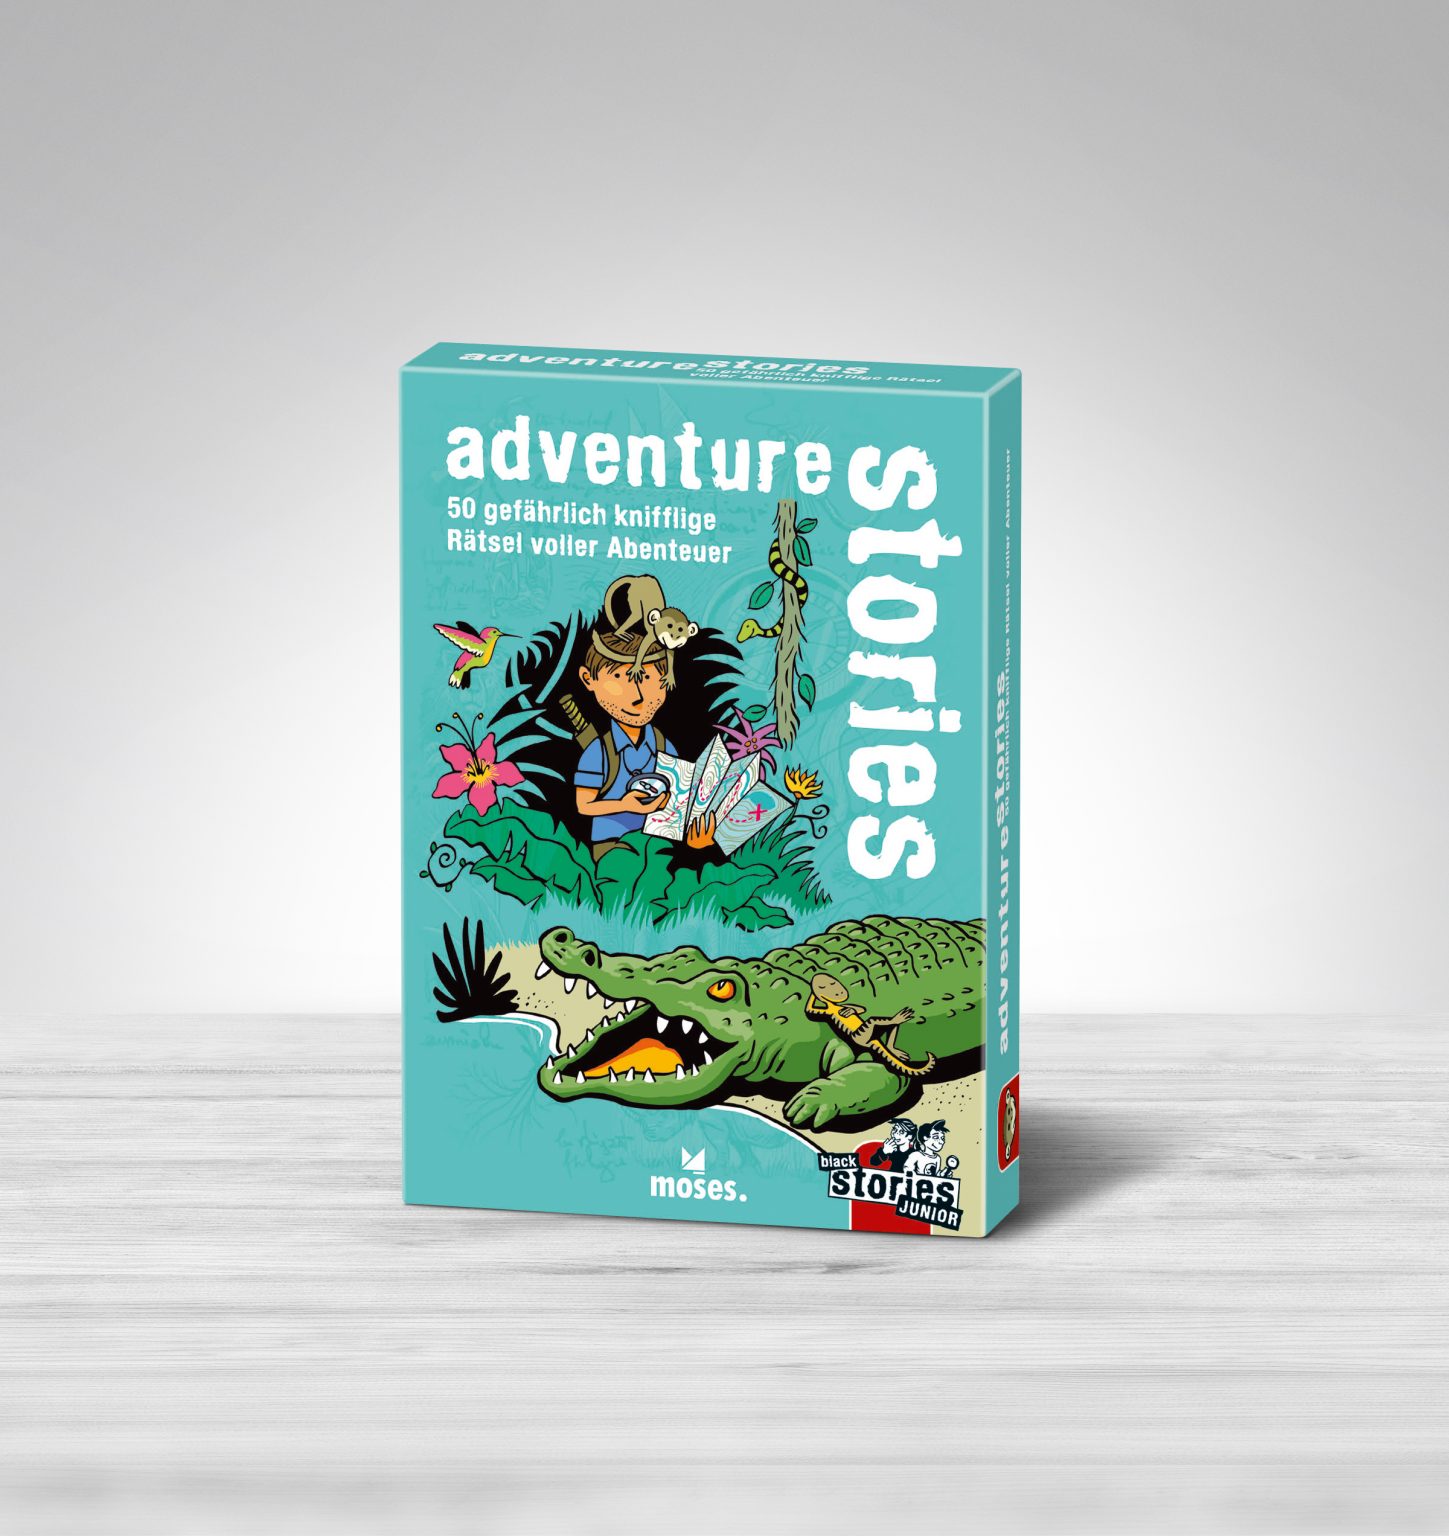 black stories Junior – adventure stories 50 gefährlich knifflige Rätsel voller Abenteuer